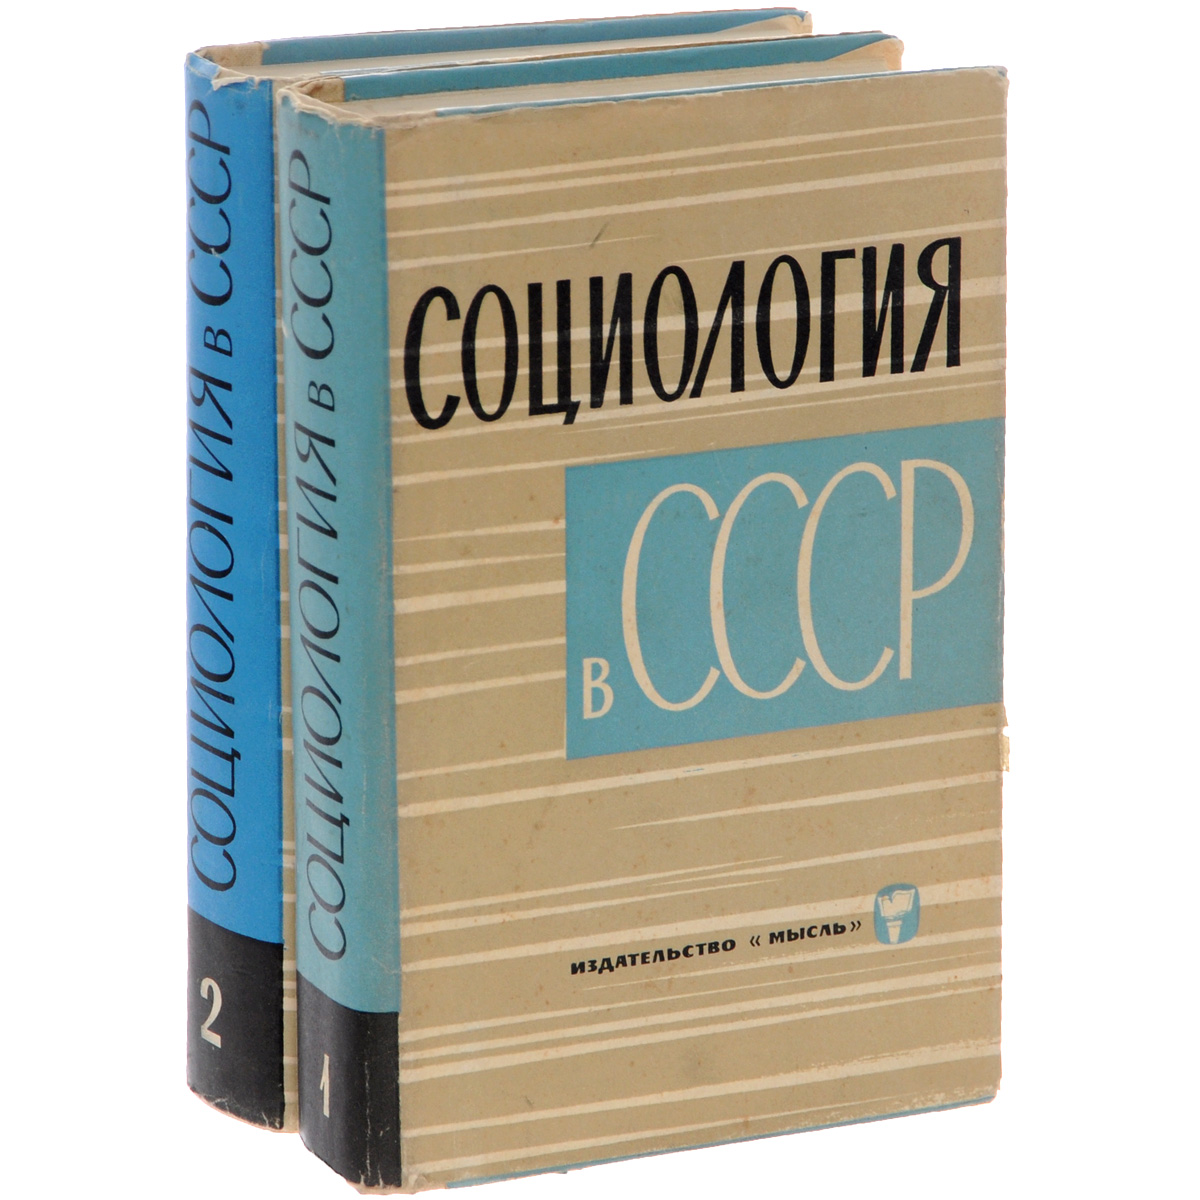 Социология в СССР. В 2 томах (комплект)